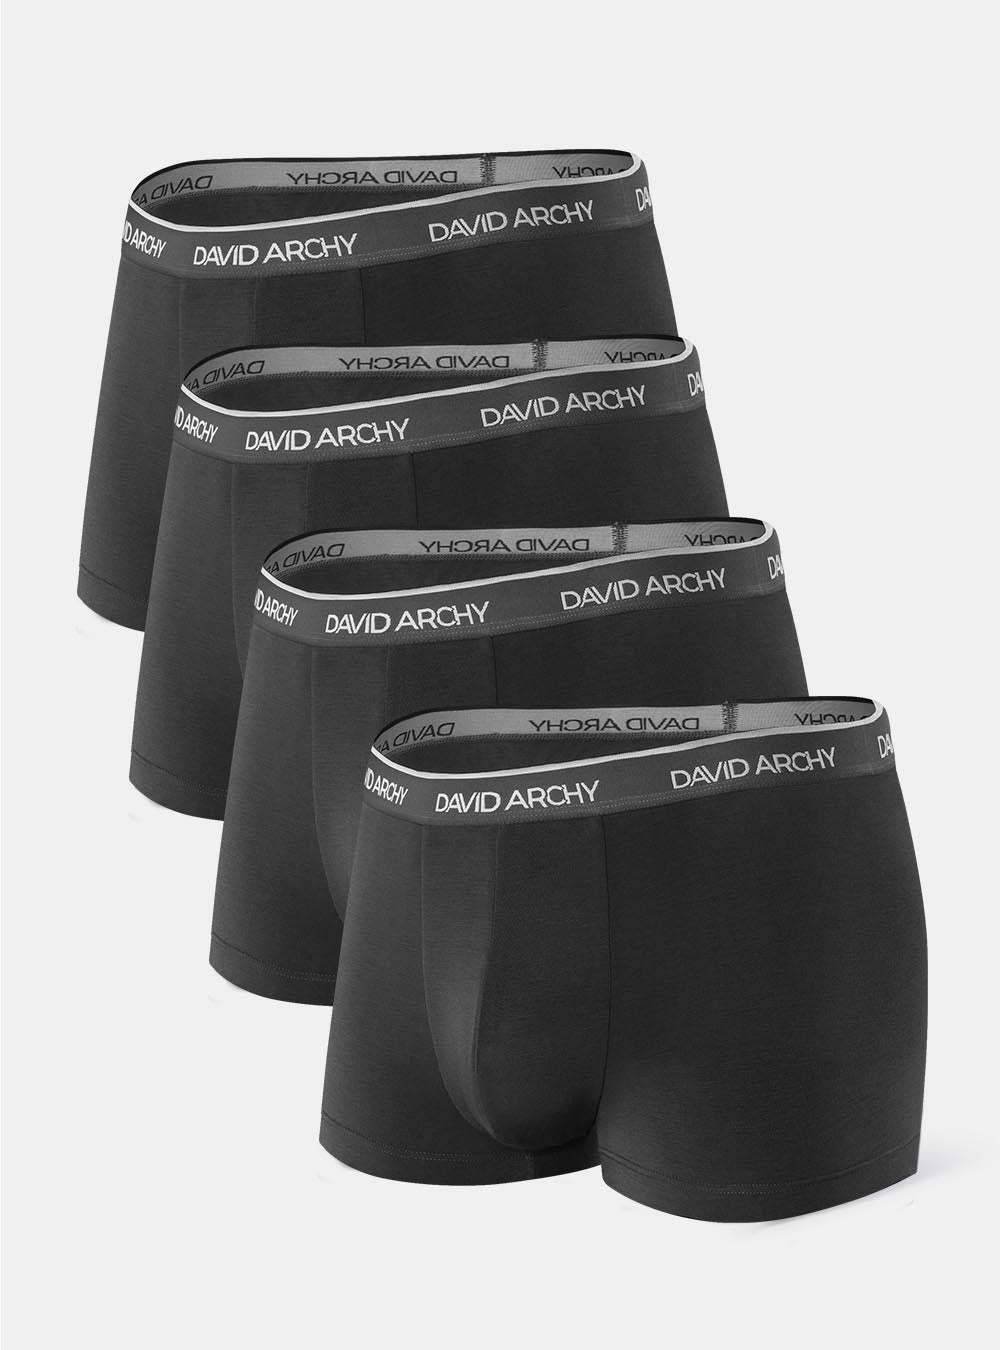 Calvin Klein Men's Underwear 4-Pack Classic Briefs Black/Gray/White 